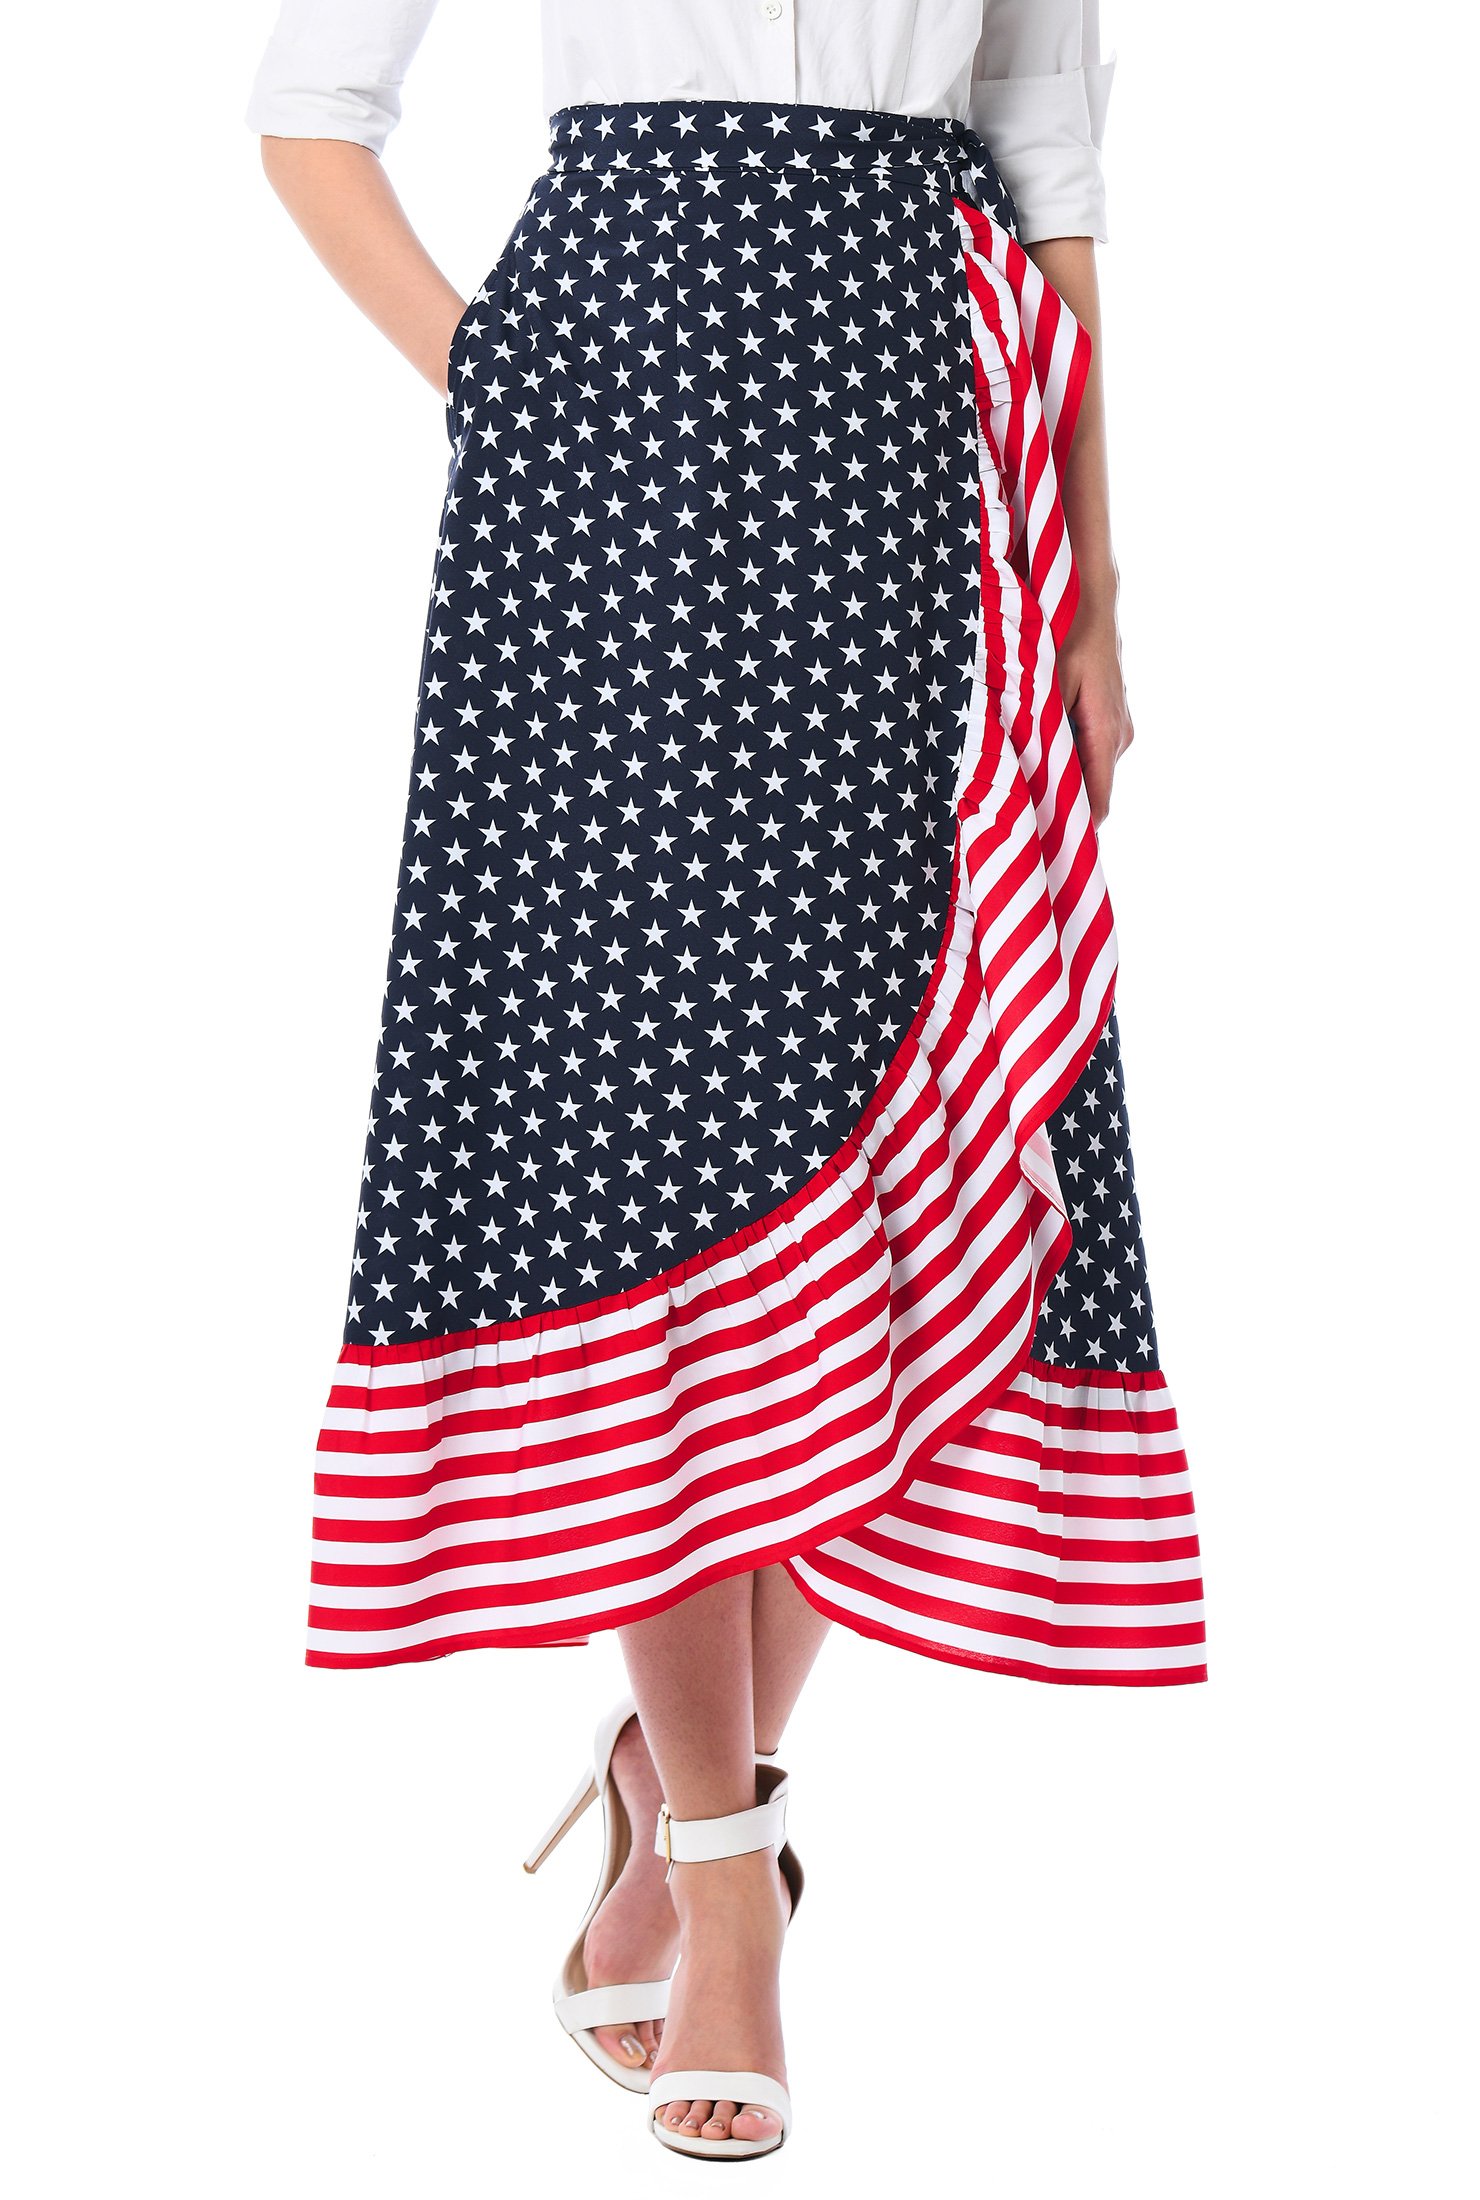 Shop Ruffle stars and stripes print crepe wrap skirt | eShakti